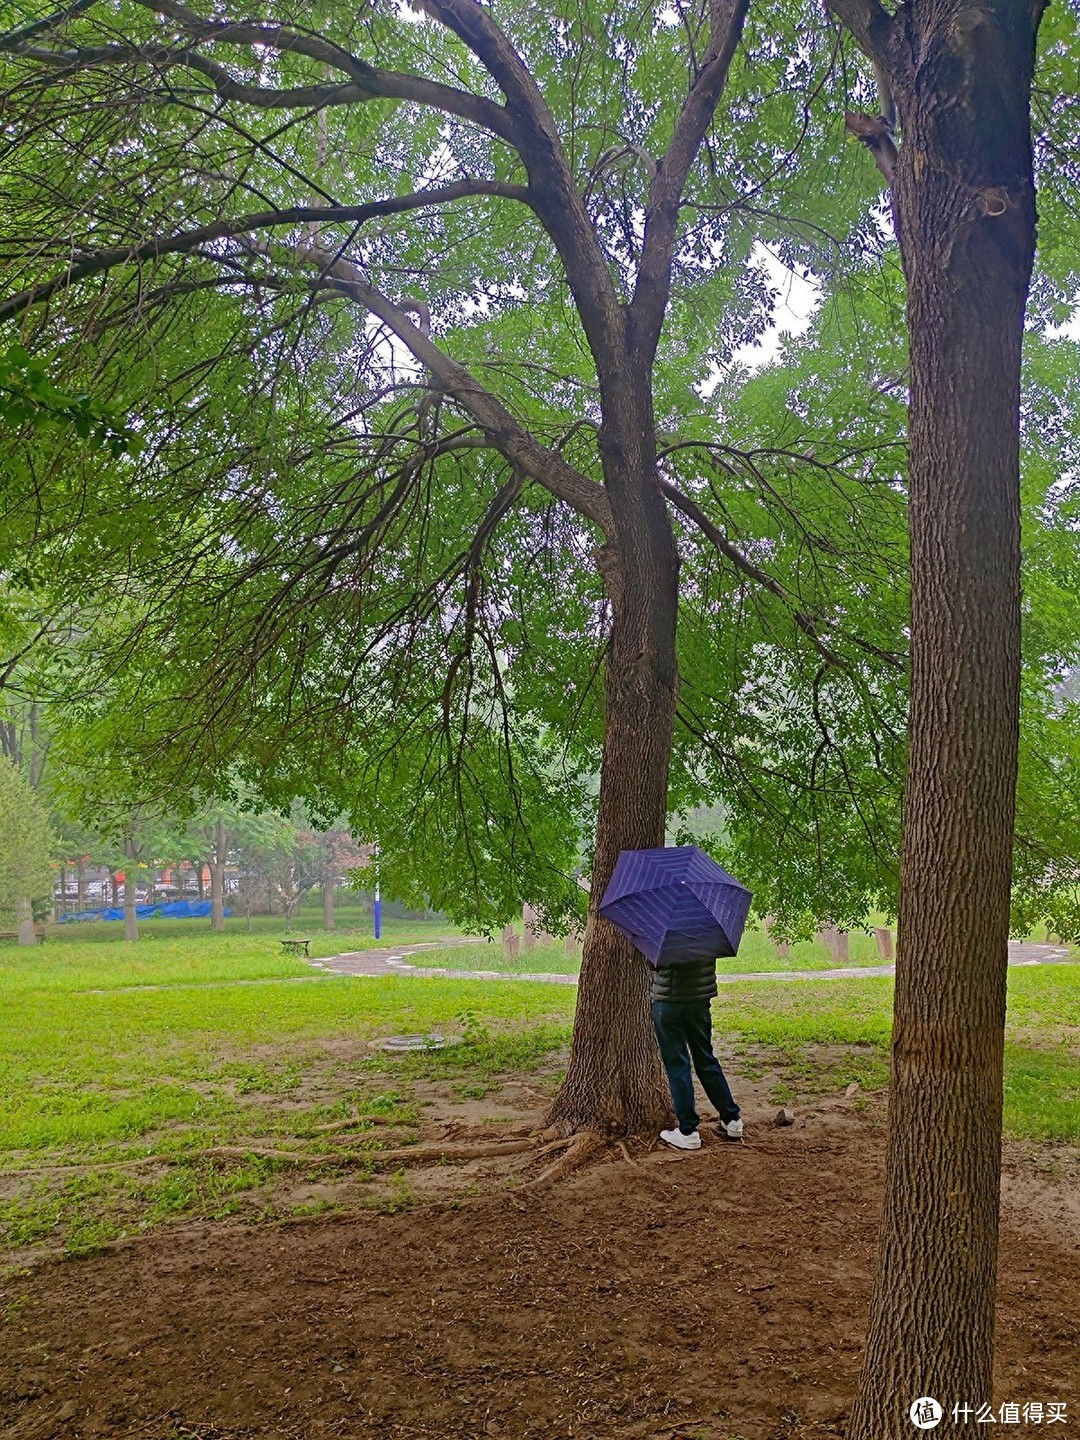 秋雨秋凉之手机摄影记录雨后公园的特别风景